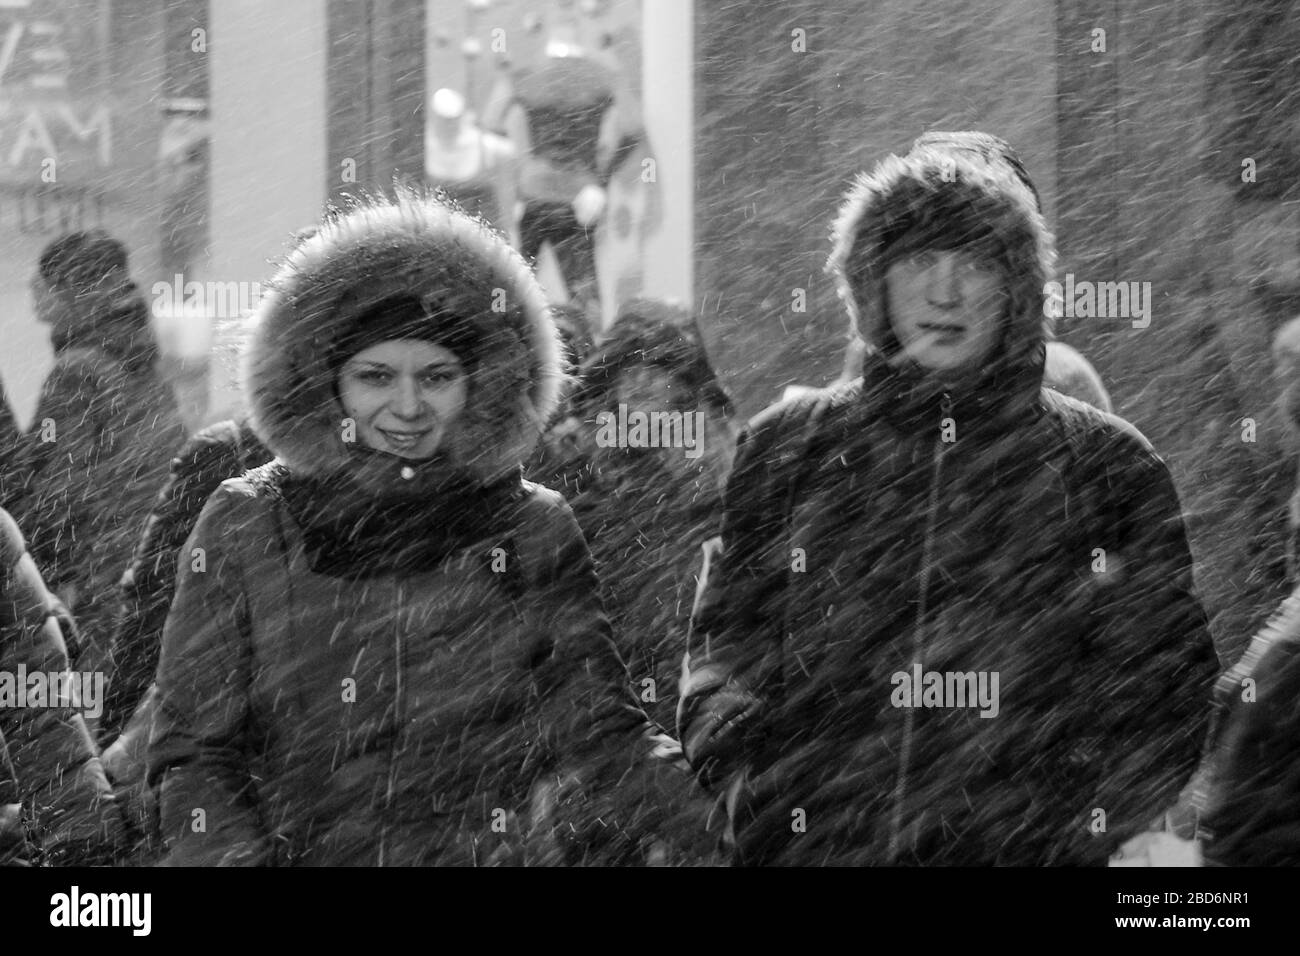 Jeune couple en vêtements d'hiver à Time Square pendant le blizzard de neige à Manhattan, New York City, États-Unis d'Amérique Banque D'Images